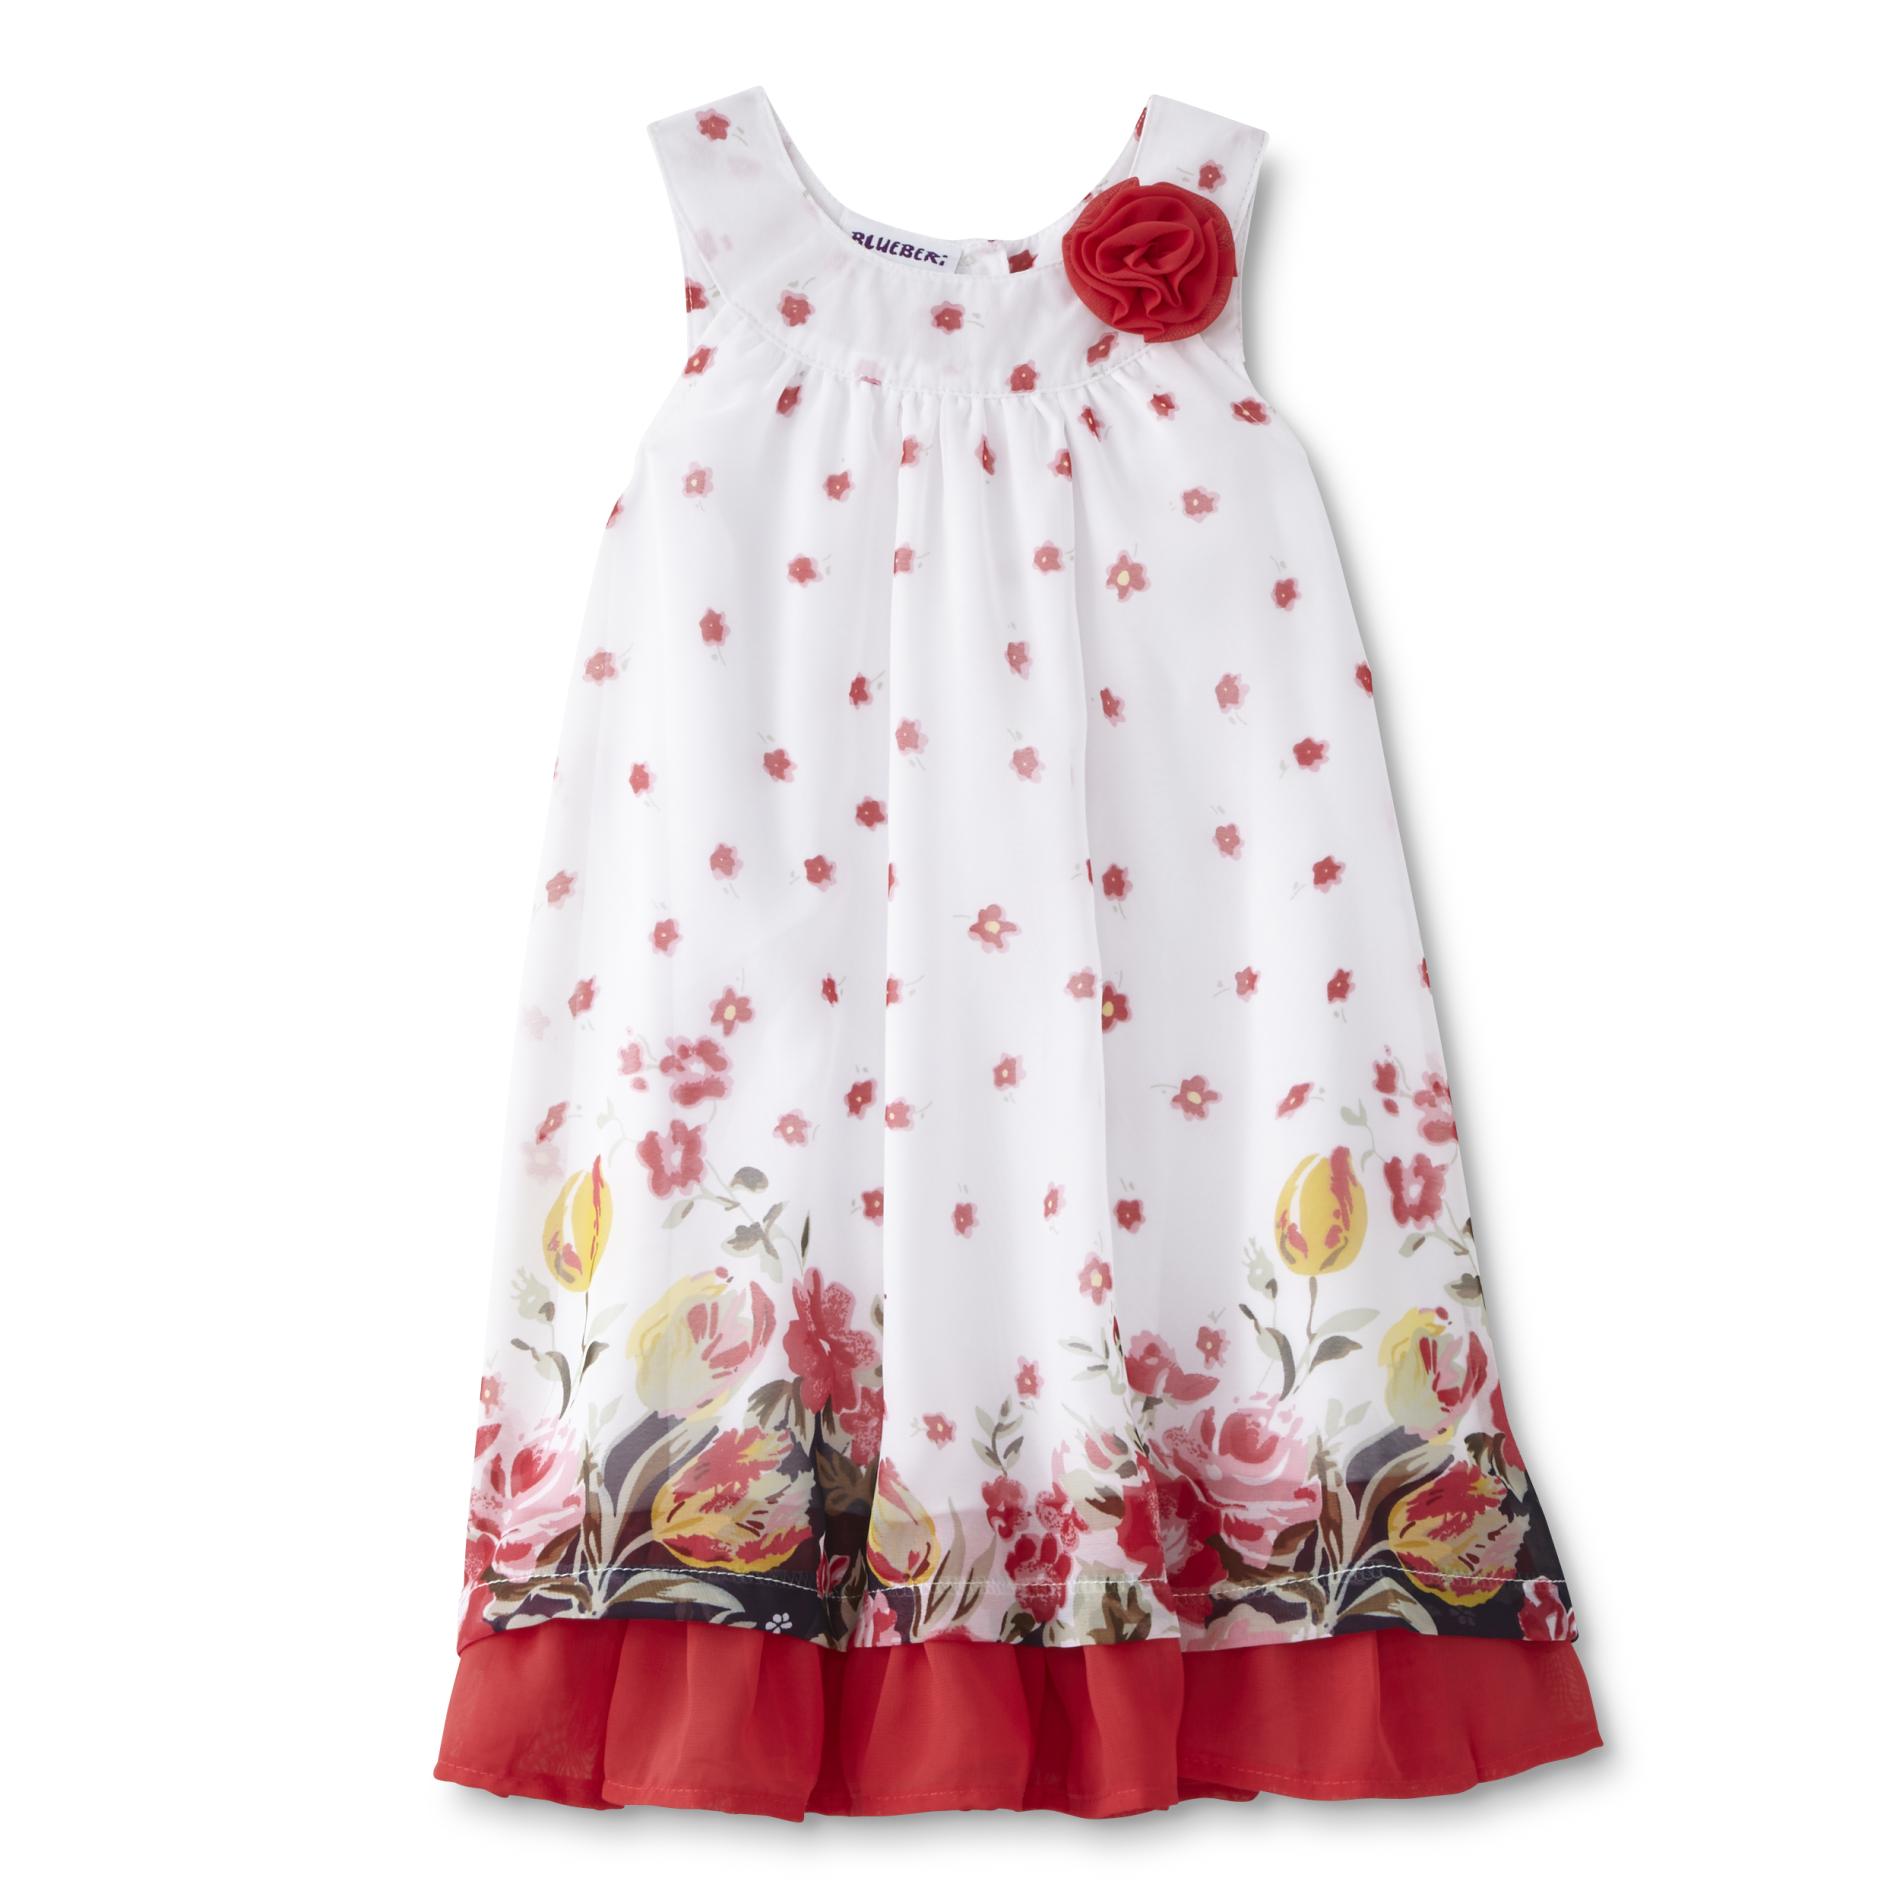 Blueberry Boulevard Infant & Toddler Girls' Halter Dress - Floral